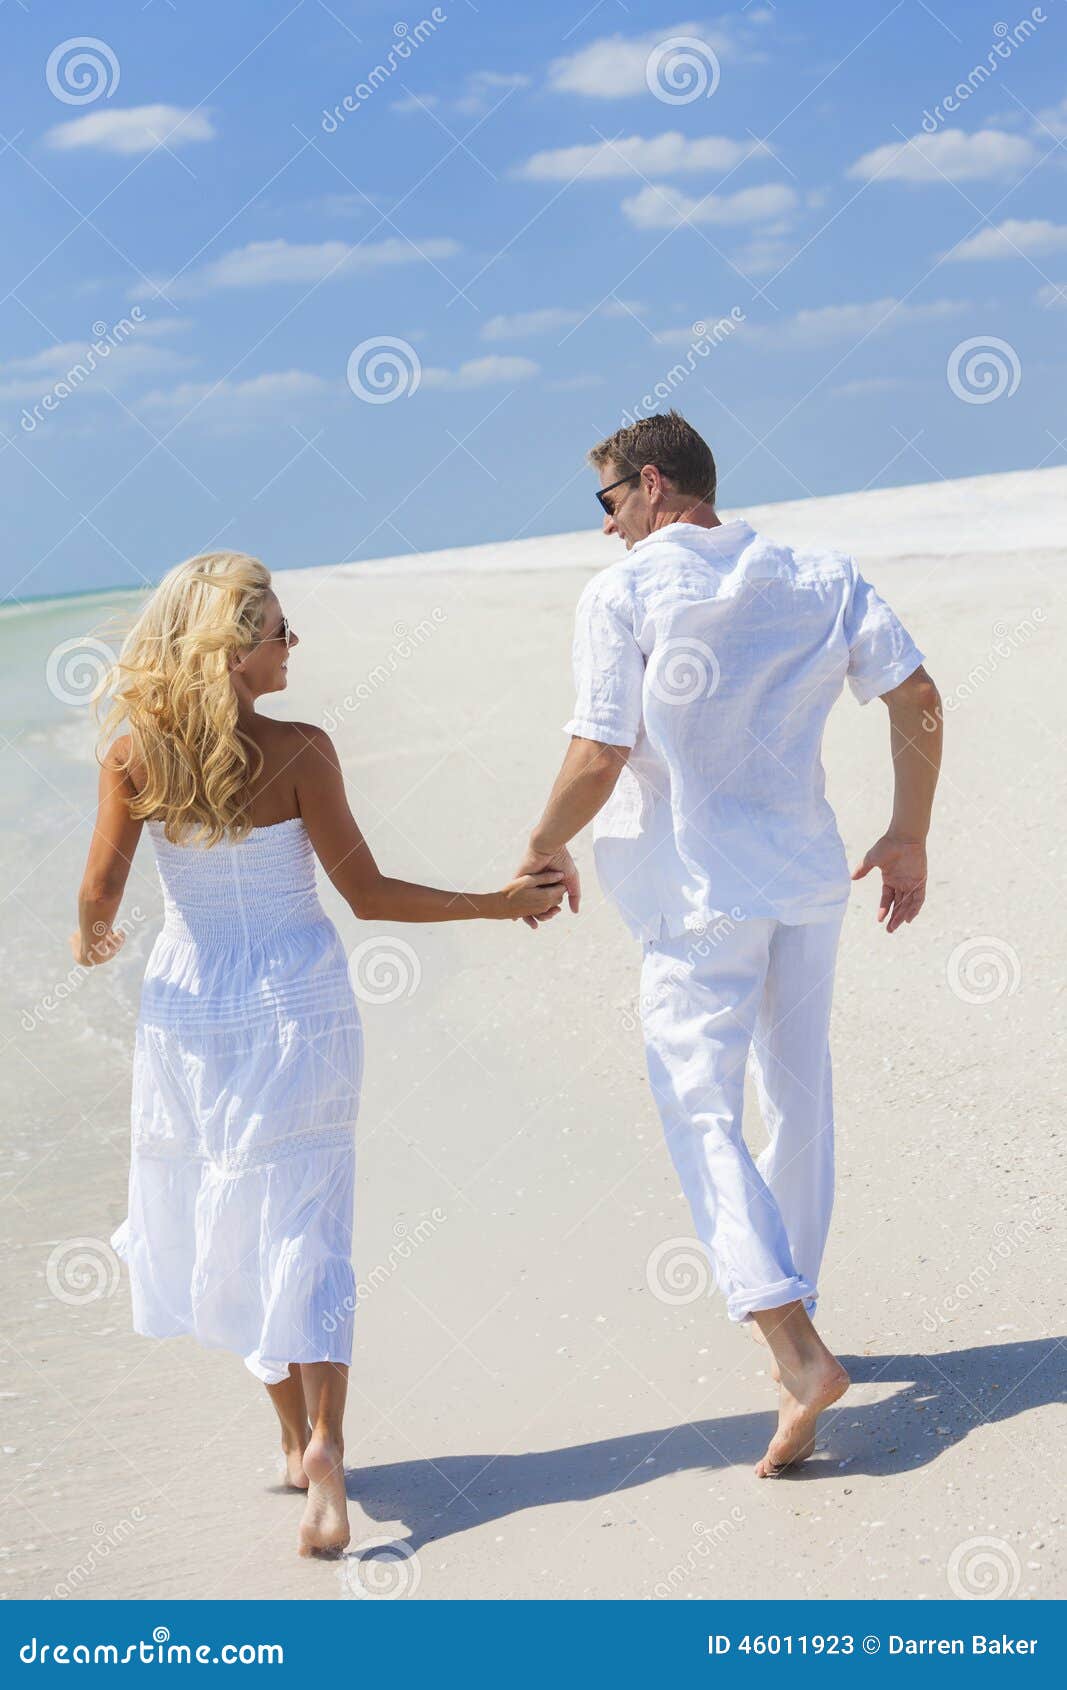 Жену на пляже муж смотрит. Пара в белой одежде на пляже. Мужчина и женщина в белом на море. Мужчина и женщина на пляже. Фотосессия на море с мужем.